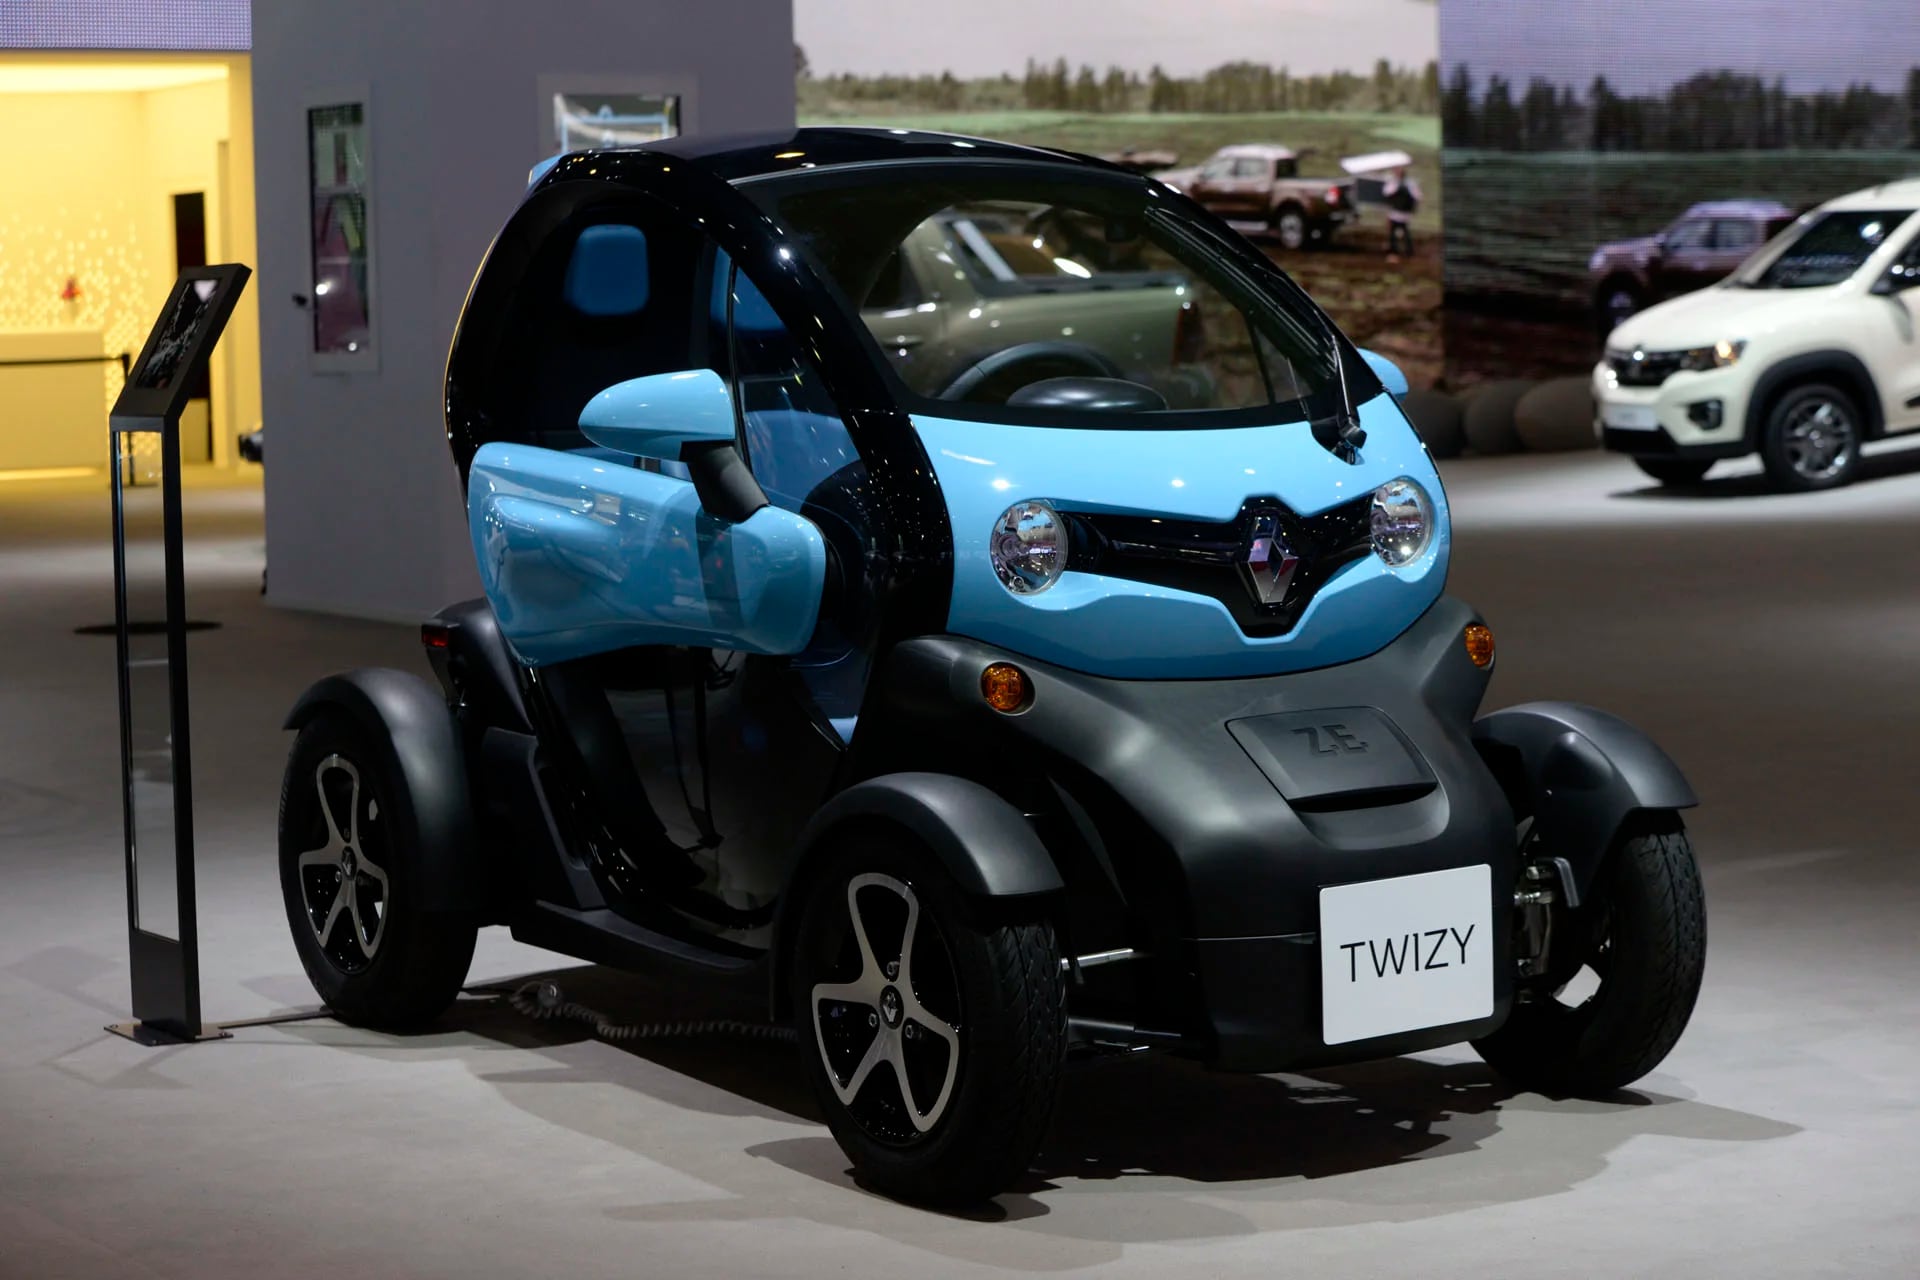 El Twizy es pensado para uso estrictamente urbano. Pequeño, ágil y versátil, entra en cualquier lugar de estacionamiento. Alimentado con baterías de ion de litio, su motor eléctrico delantero tiene 20 CV de potencia y 7,1 kgfm de torque